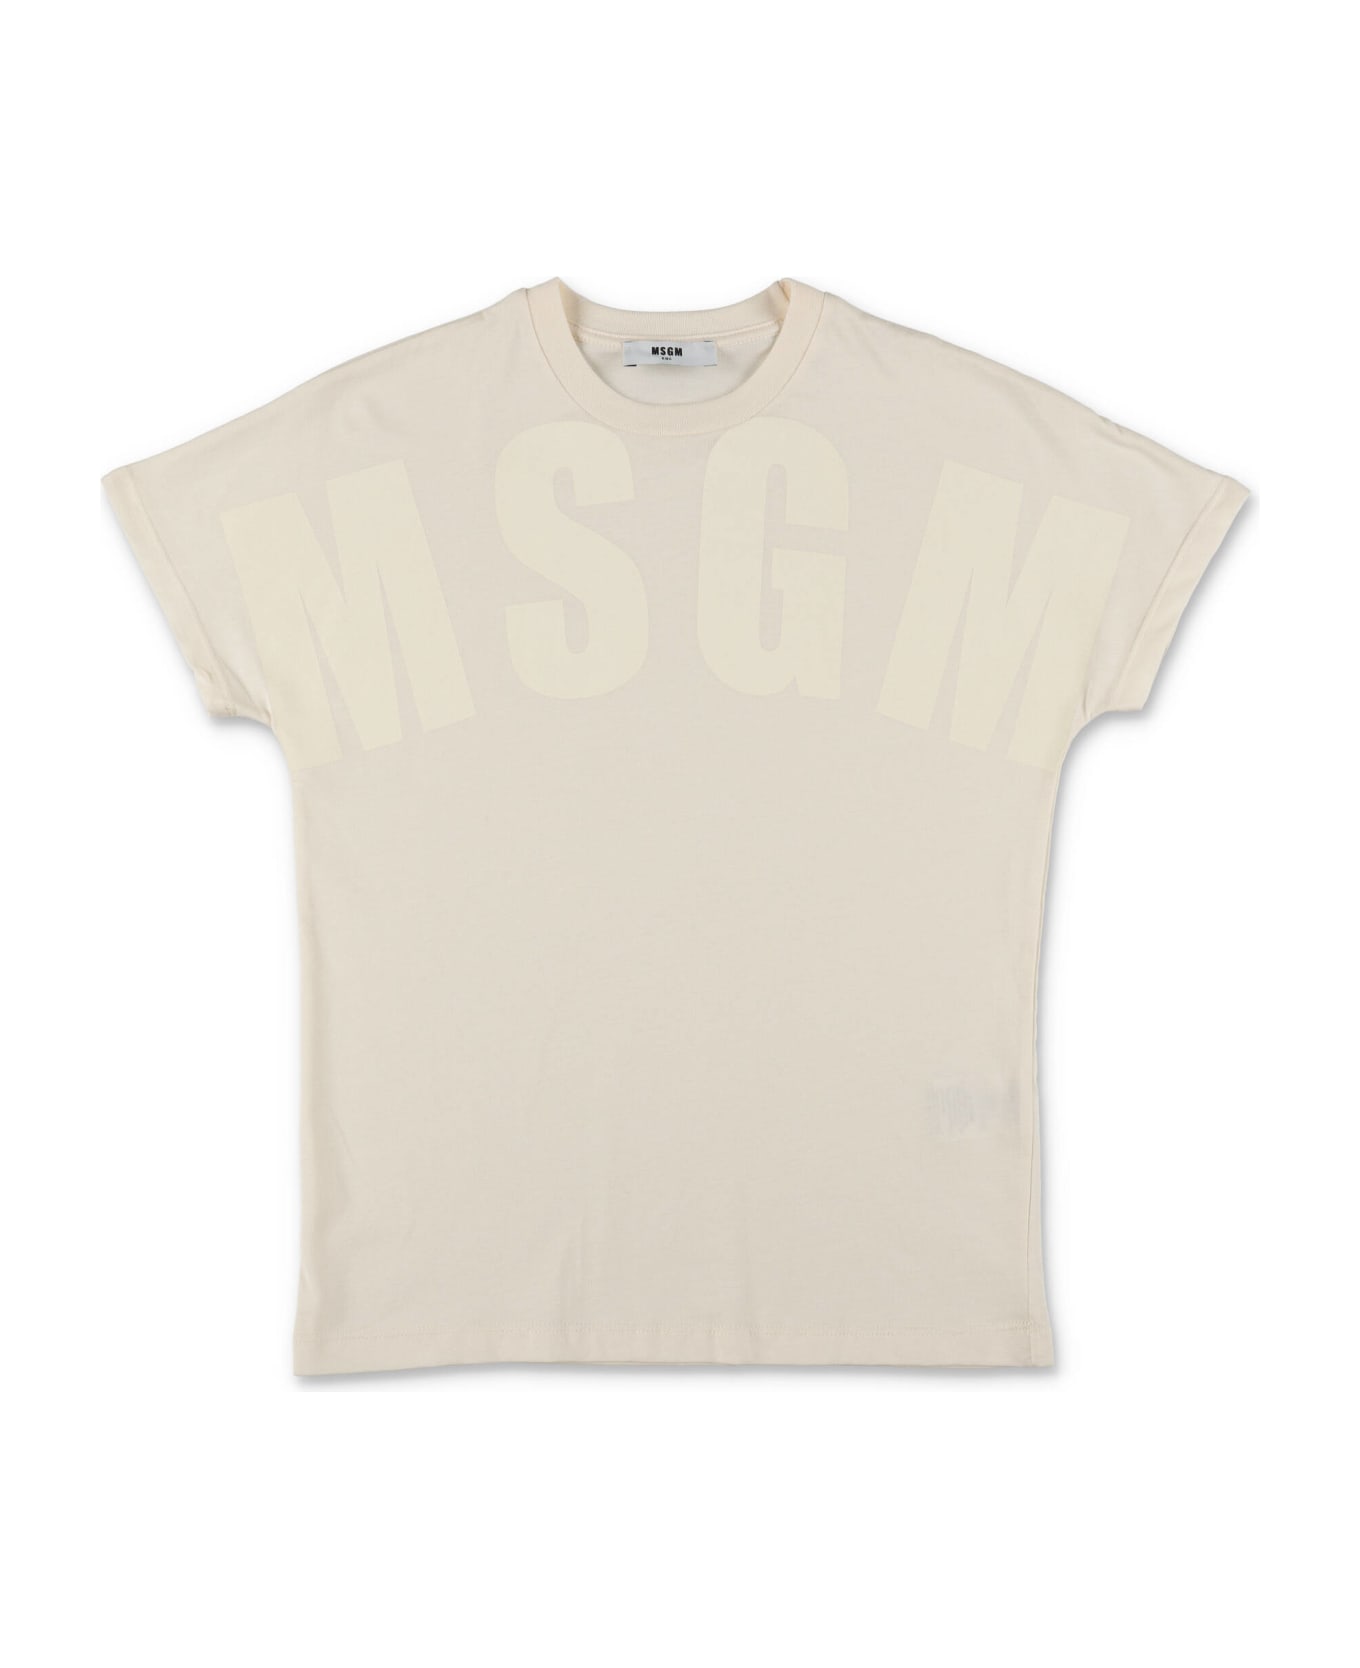 MSGM T-shirt Crema In Jersey Di Cotone Bambino - Crema